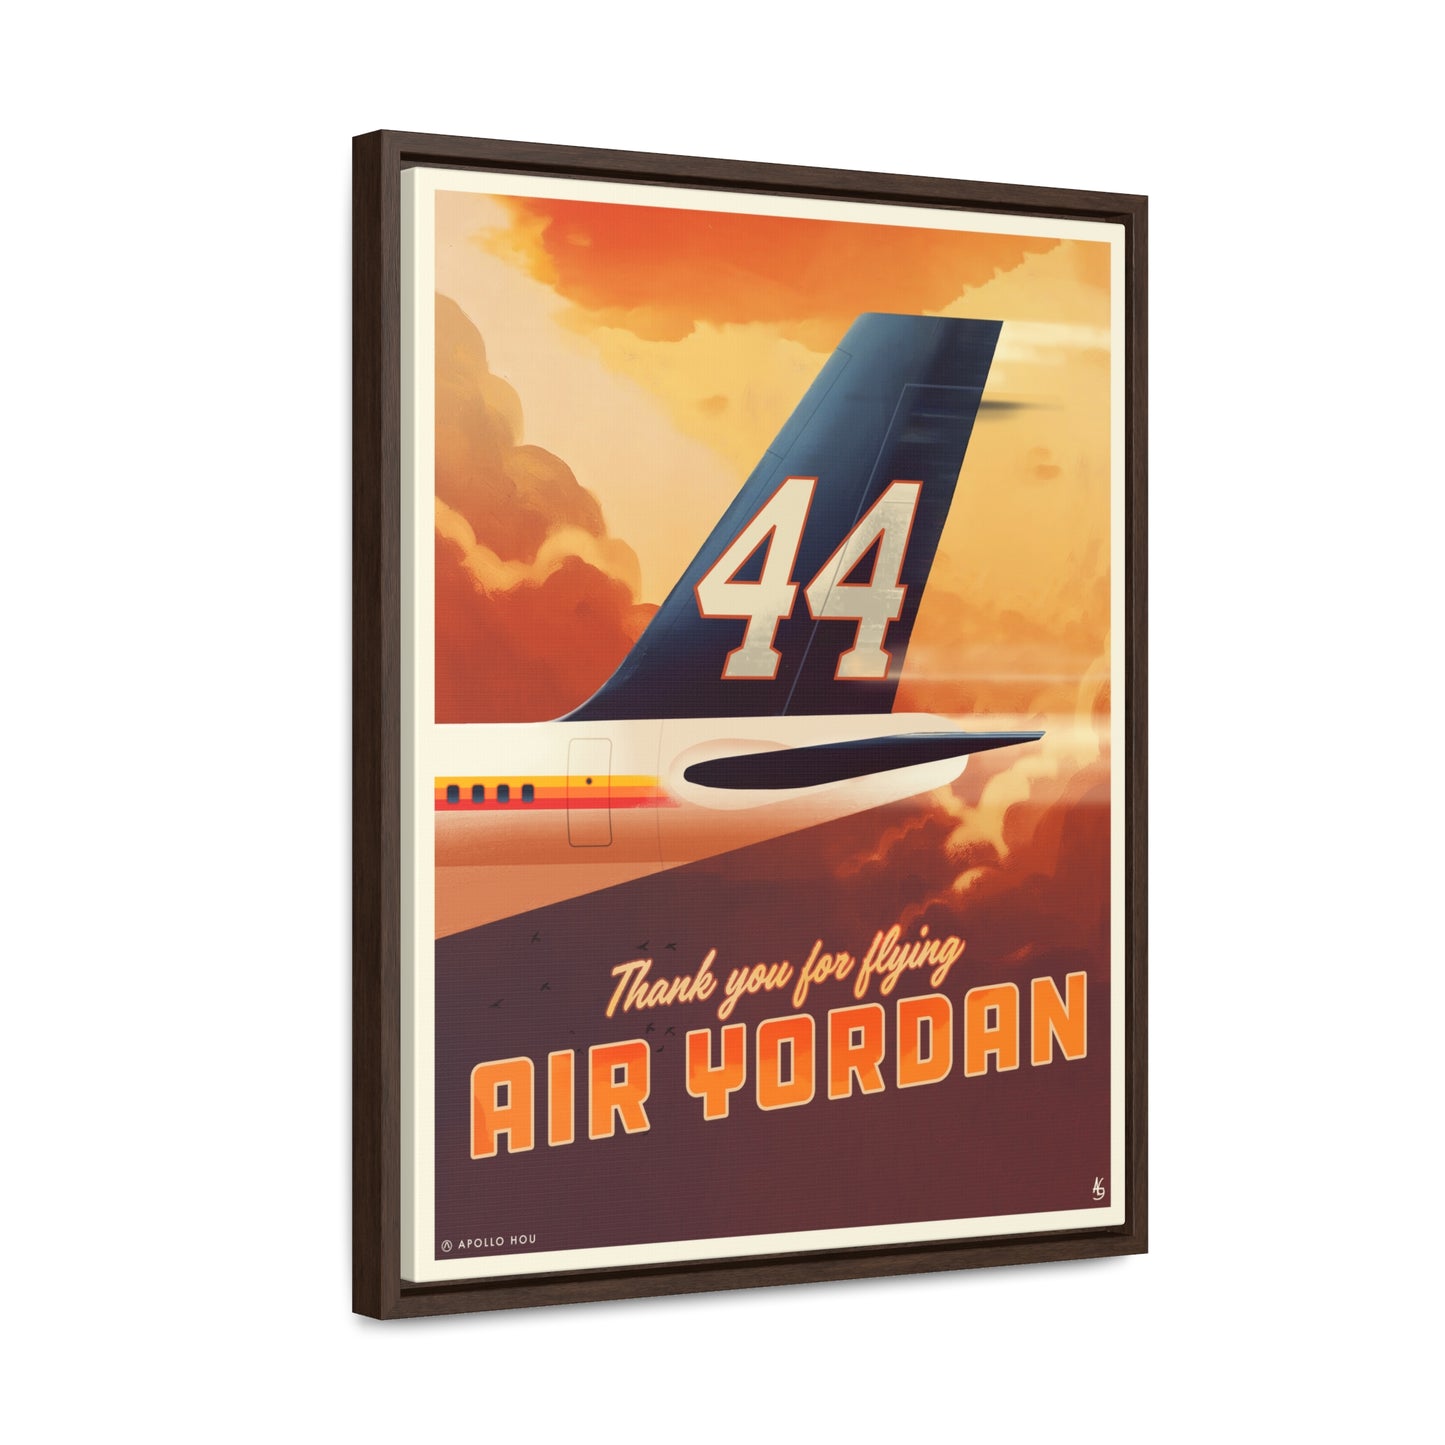 "Air Yordan" - Premium Canvas Wrap with Vertical Frame 16x20